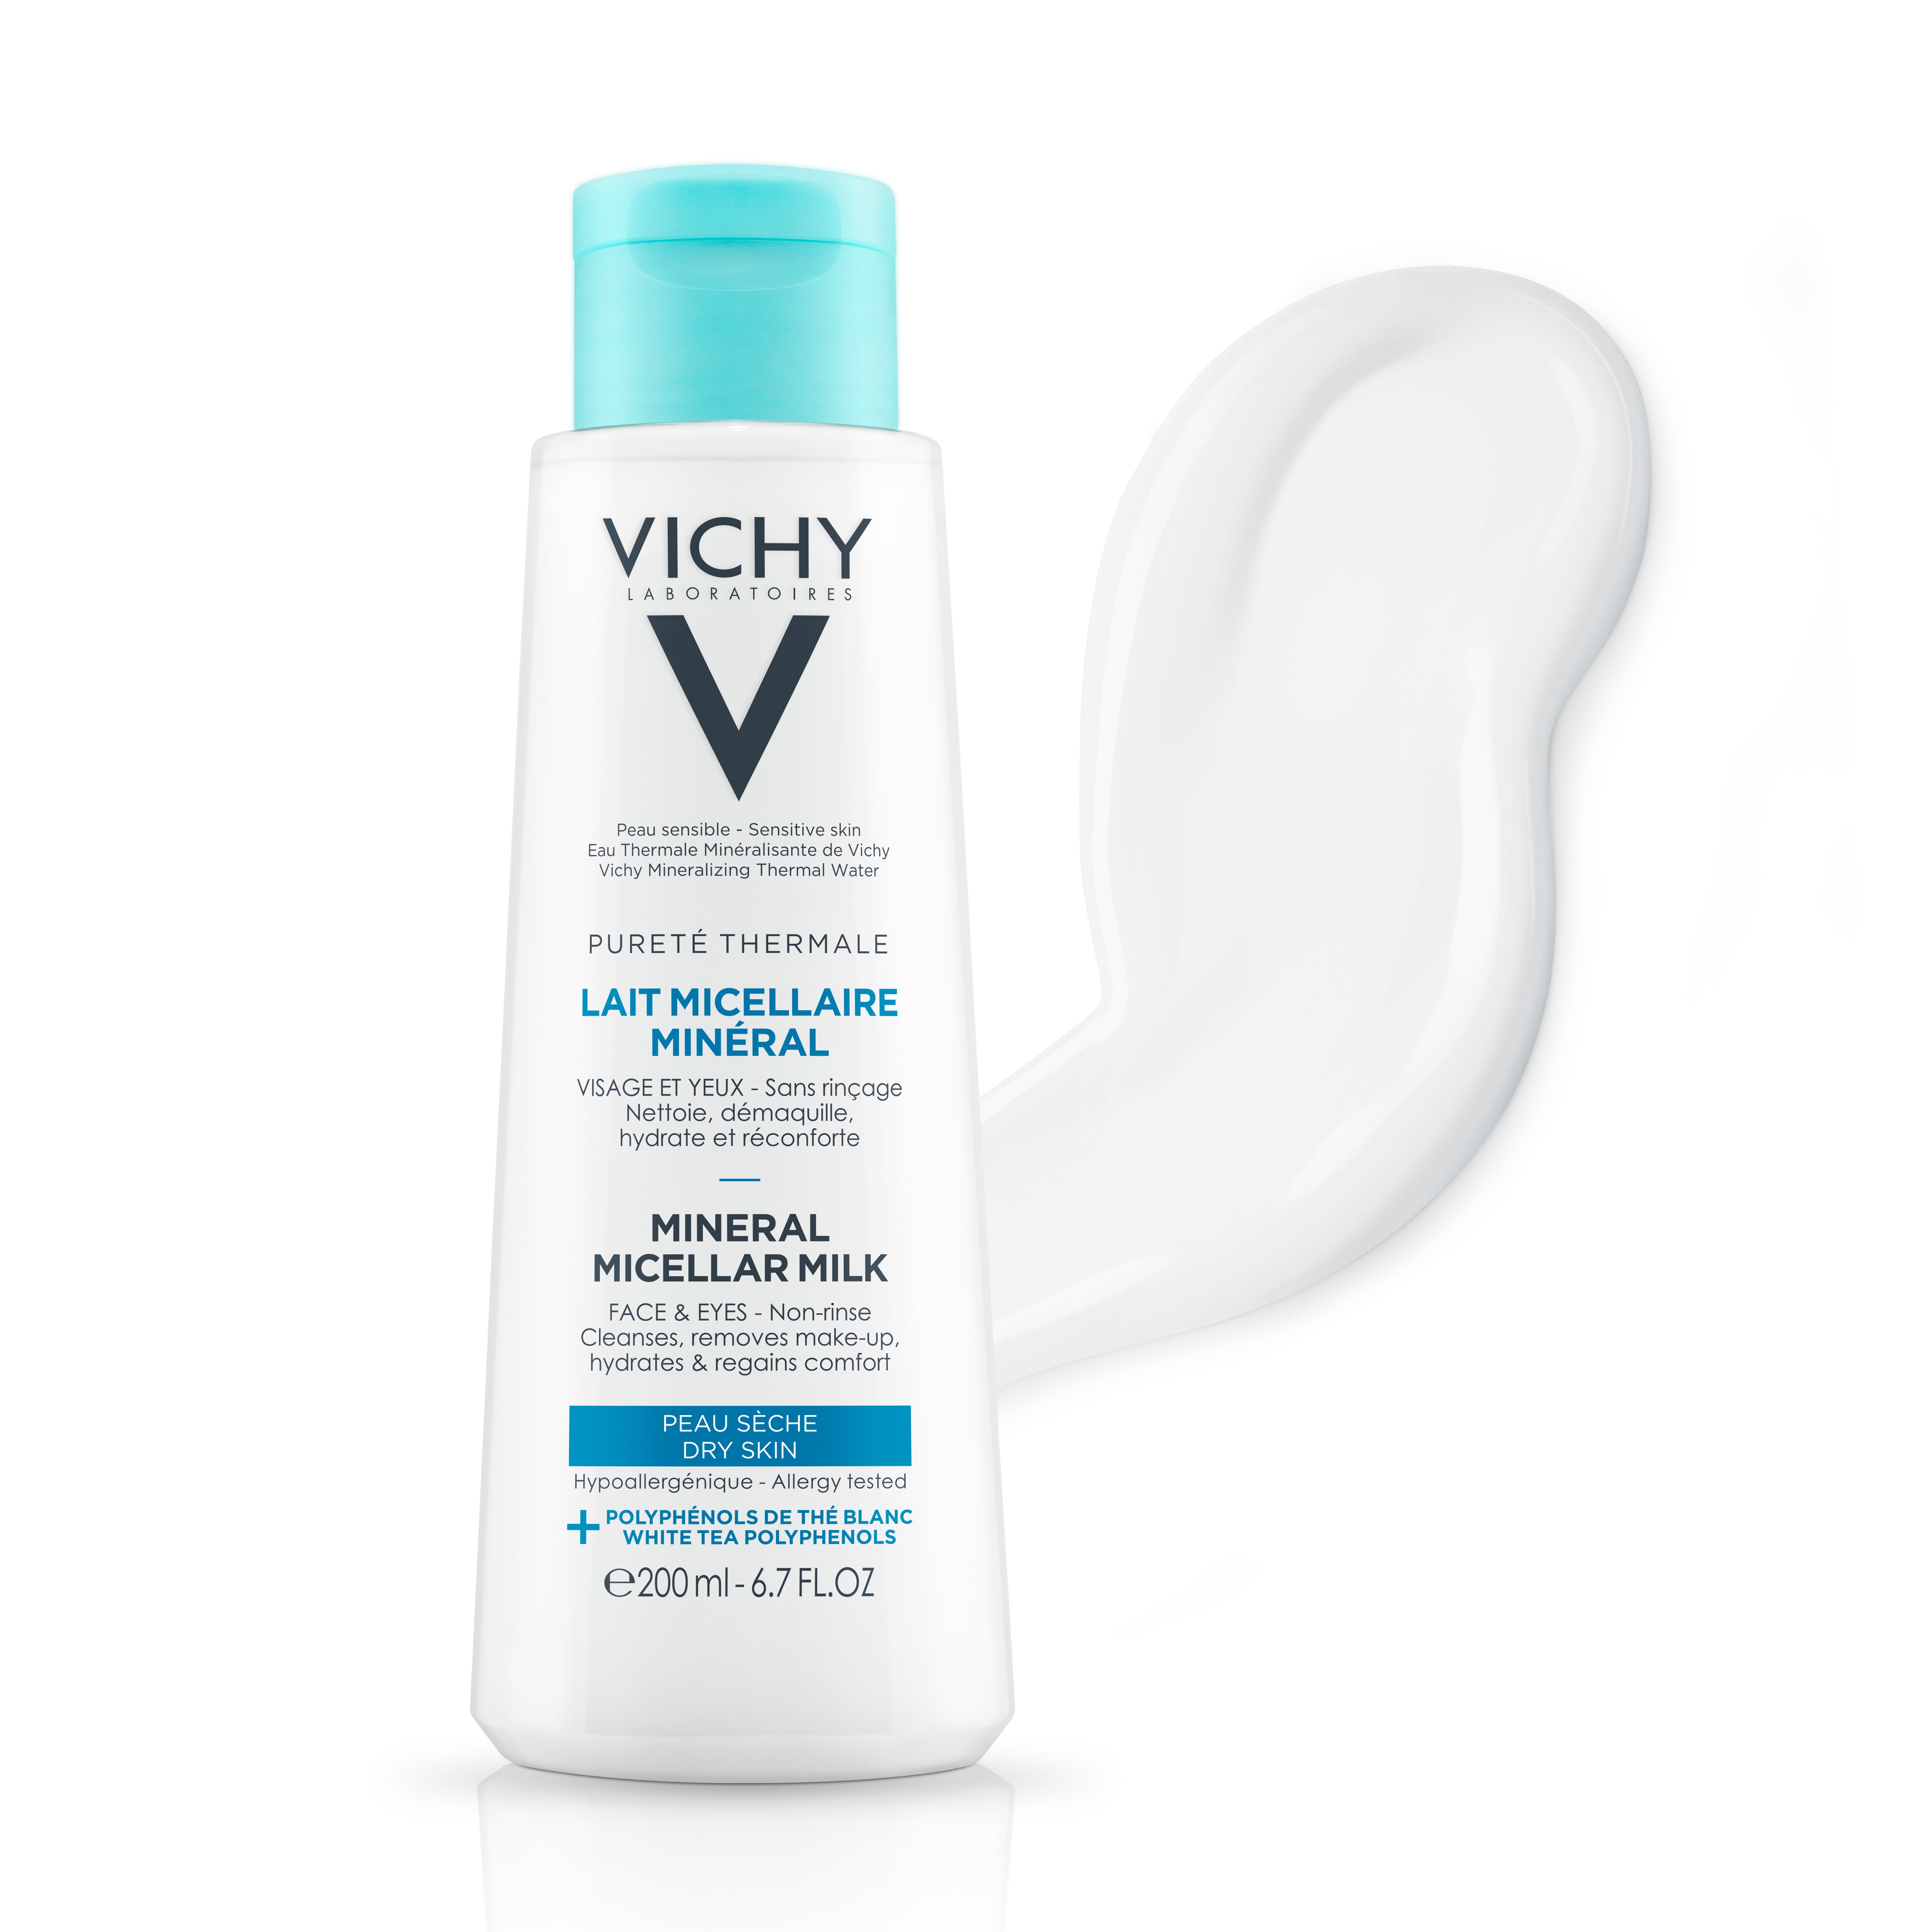 Міцелярне молочко Vichy Purete Thermale, для сухої шкіри, 200 мл - фото 3